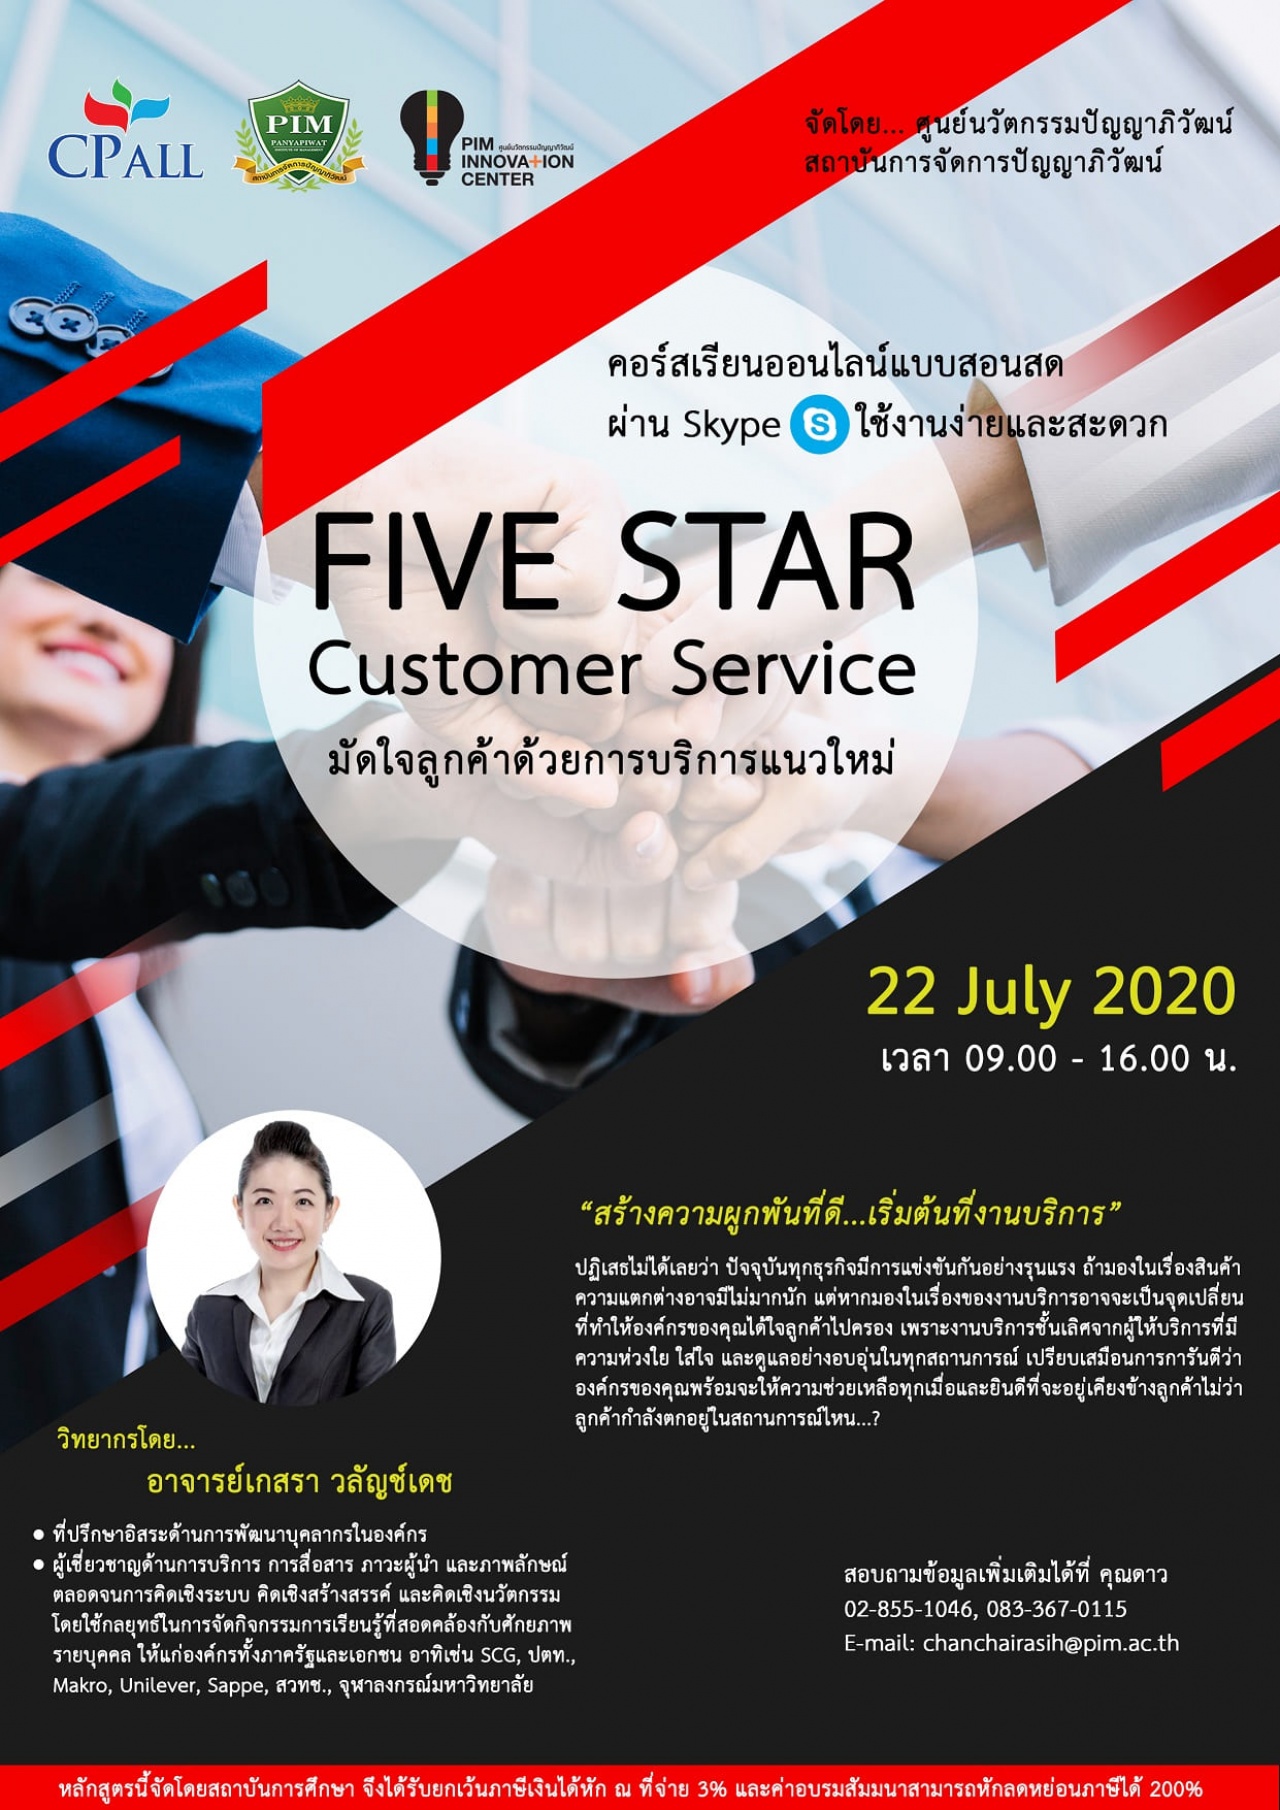 หลักสูตร Five Star Customer Service "มัดใจลูกค้าด้วยการบริการแนวใหม่" 